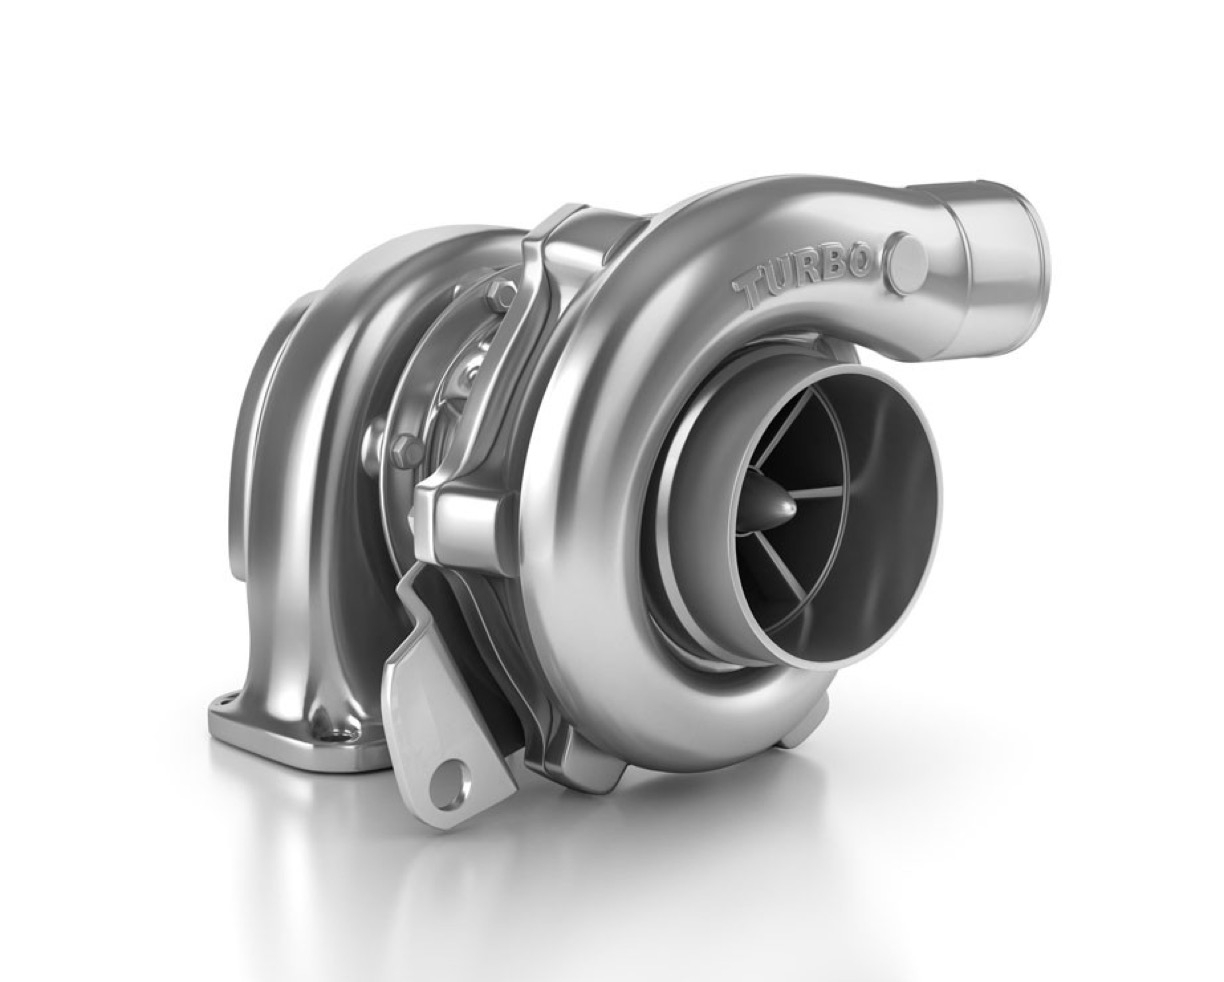 Augmentation de la puissance d'un moteur turbo diesel